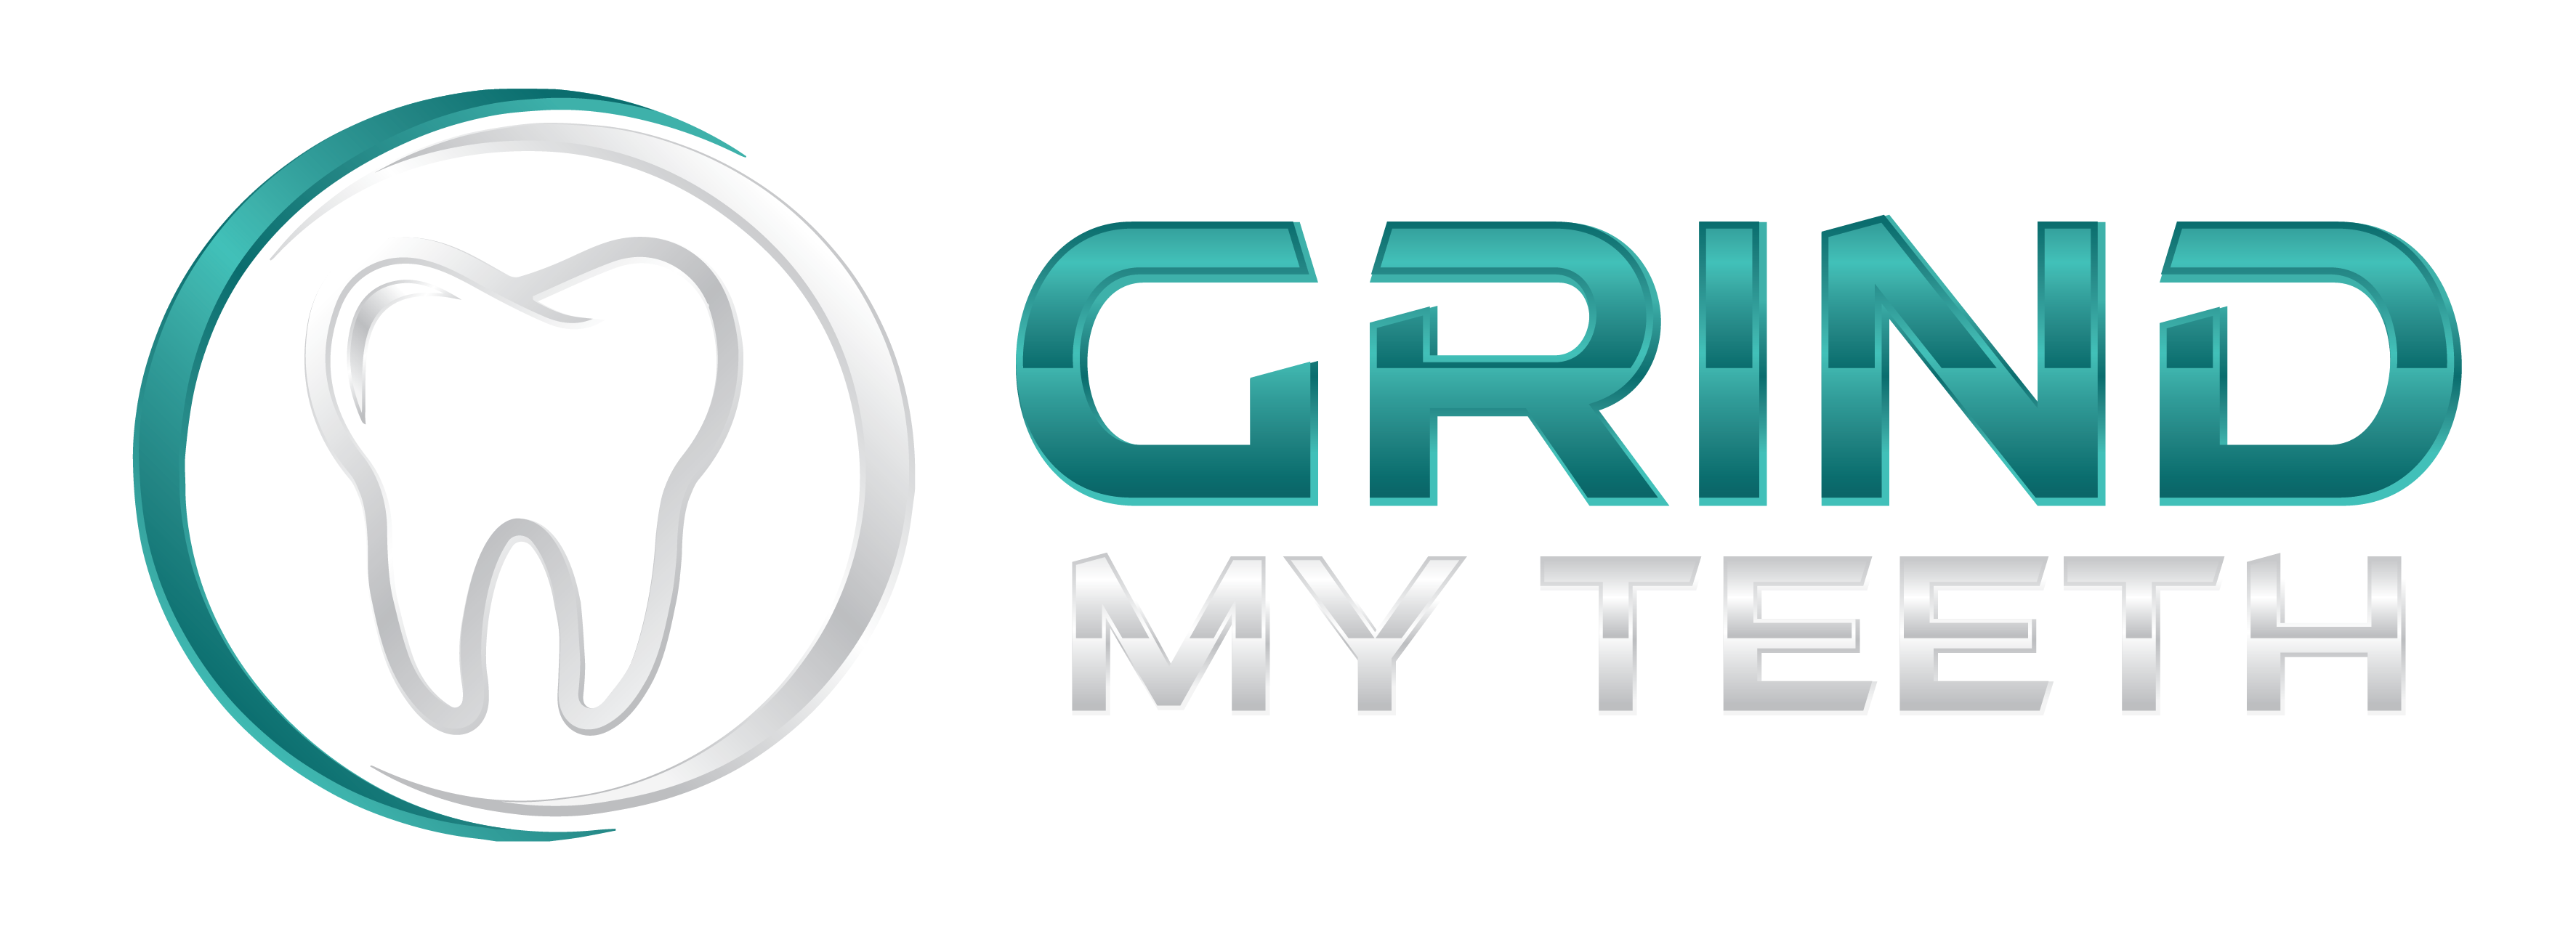 Grind my teeth logo